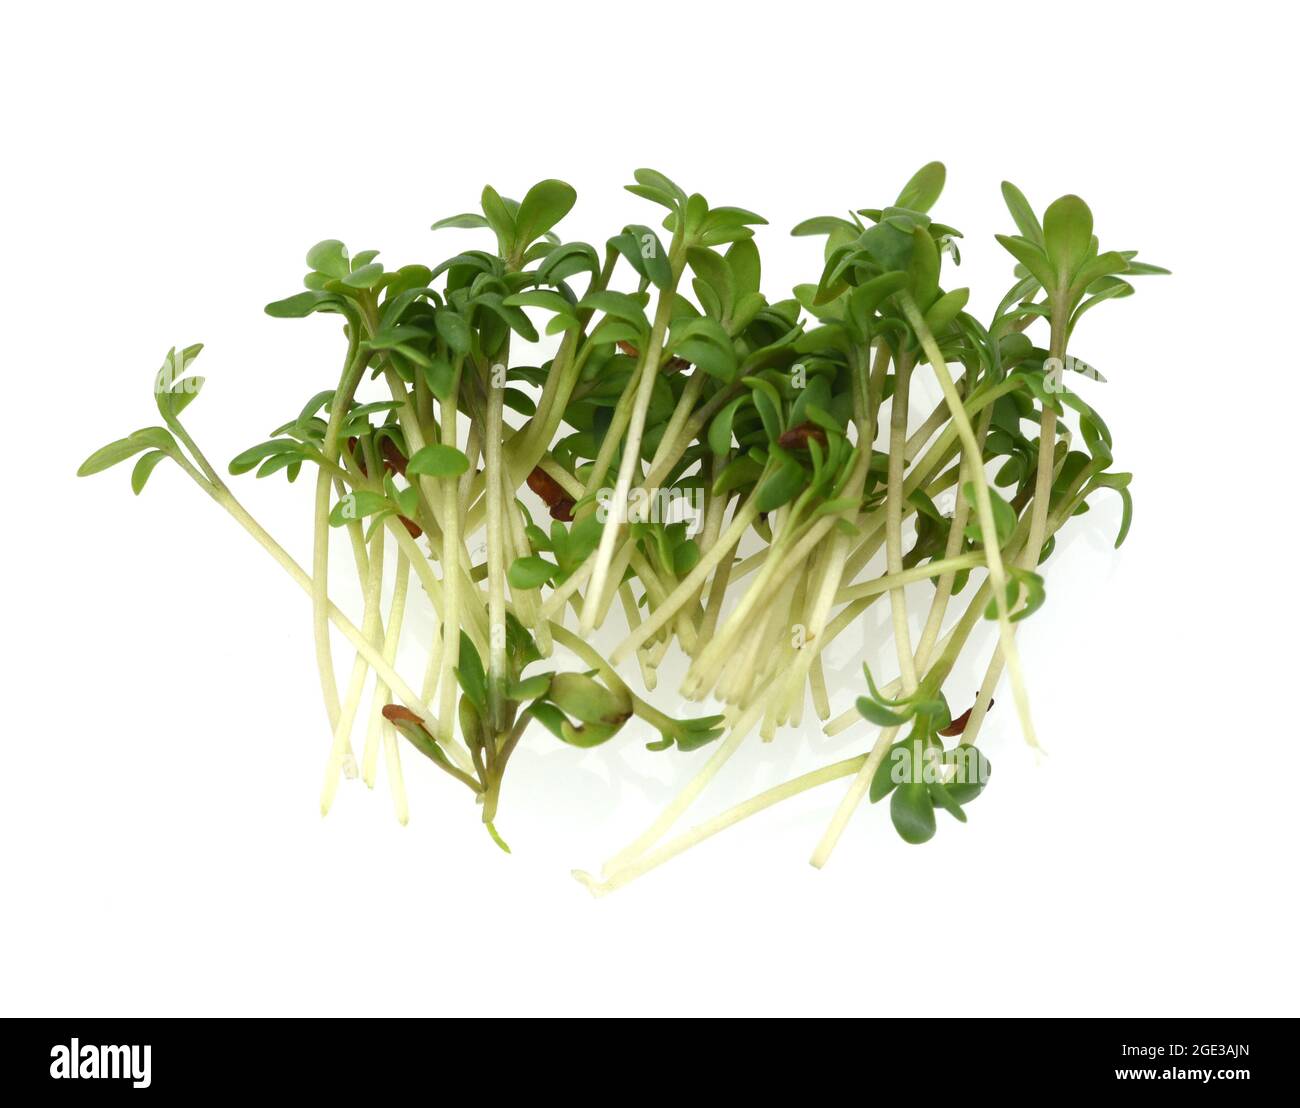 Kresse, Saemling, Lepidium Sativum, ist eine wichtige Heil- und Medizinalpflanze. Cress, seedling, Lepidium sativum, is an important medicinal and med Stock Photo